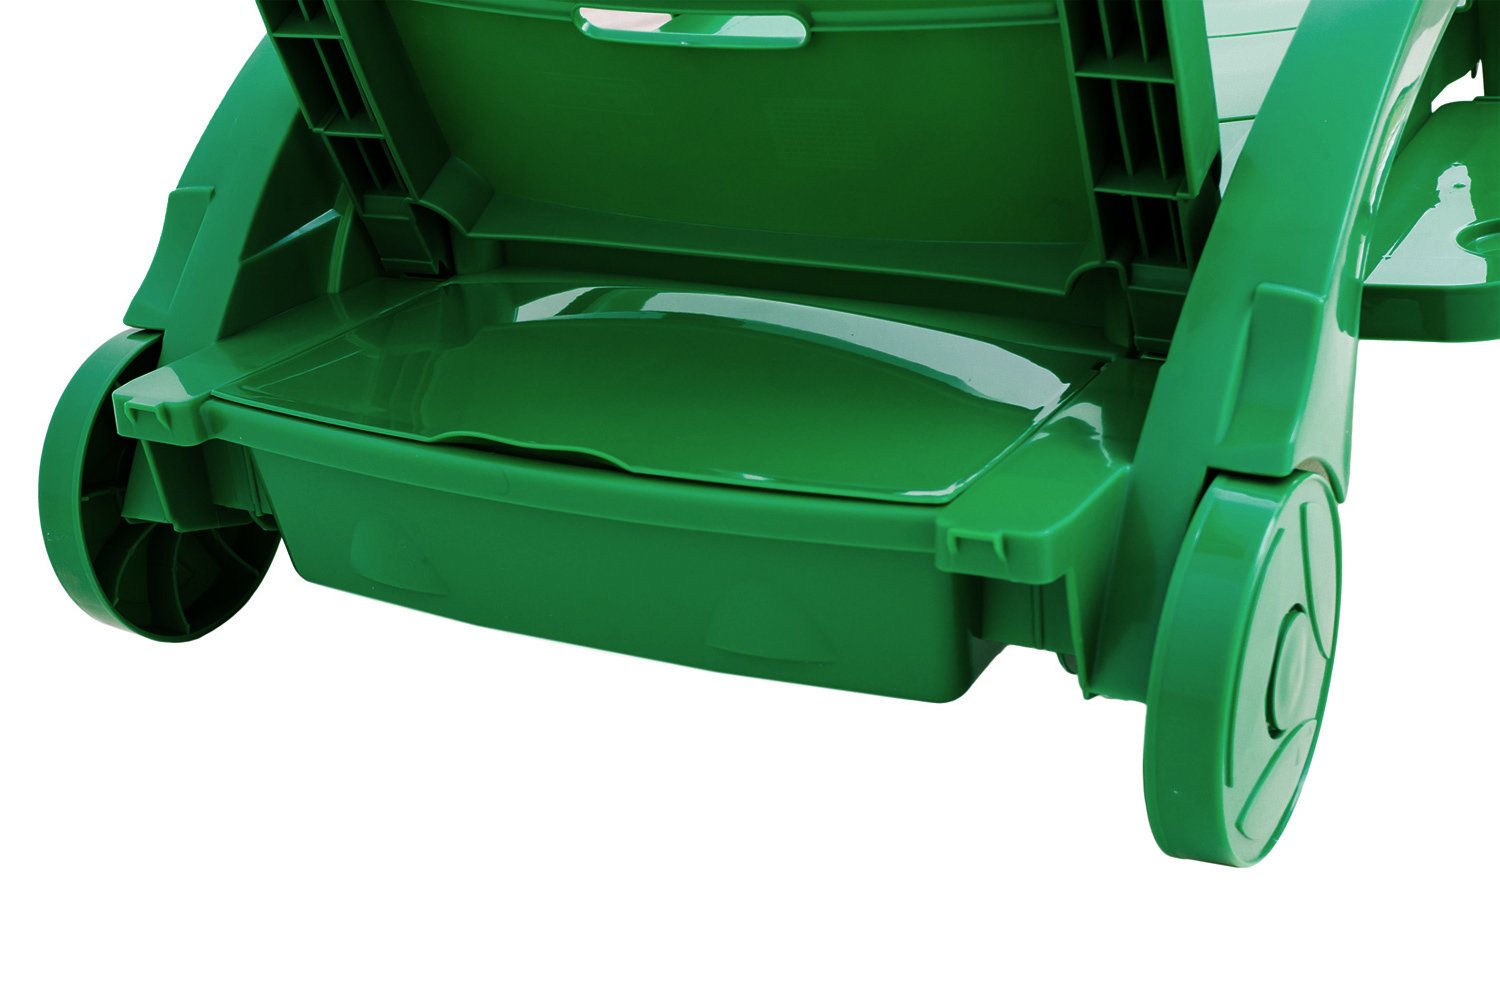 Шезлонг пластиковый на колесах 150-0008, 1860x765x890мм, цвет зеленый